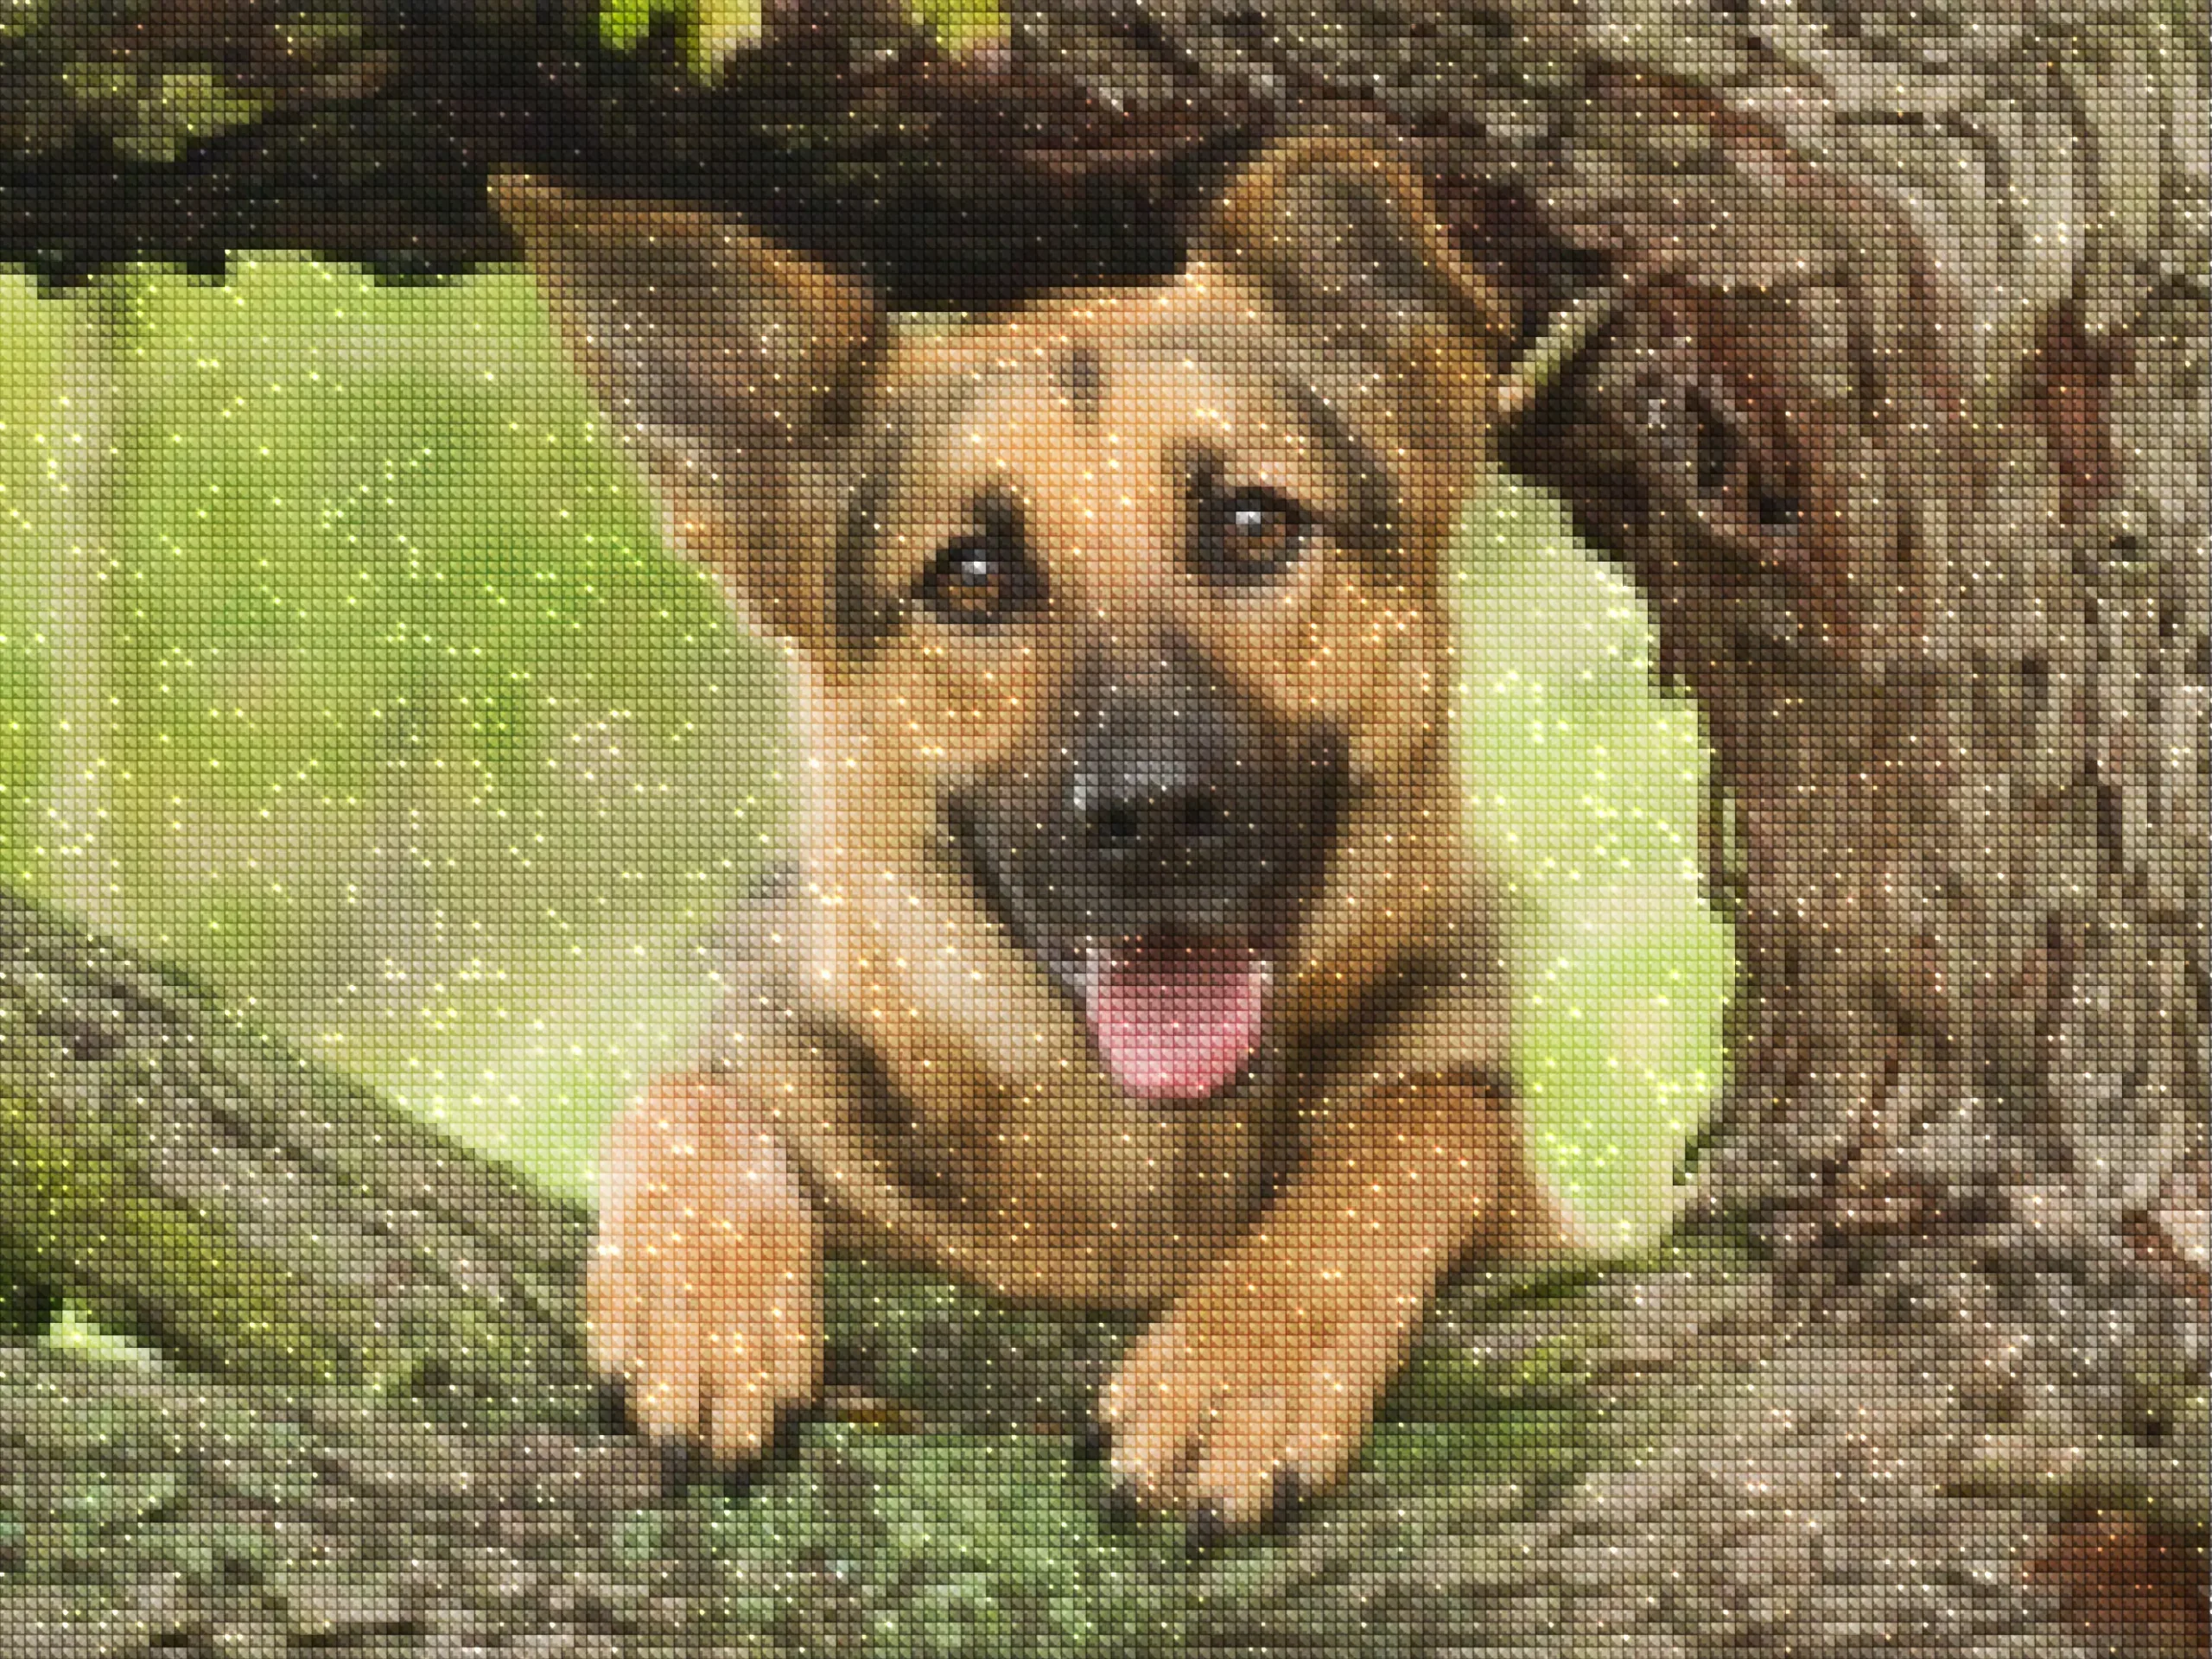 diamanten-tovenaar-diamant-schilderpakketten-dieren-hond-schattige Duitse herderpuppy in een boom-diamonds.webp